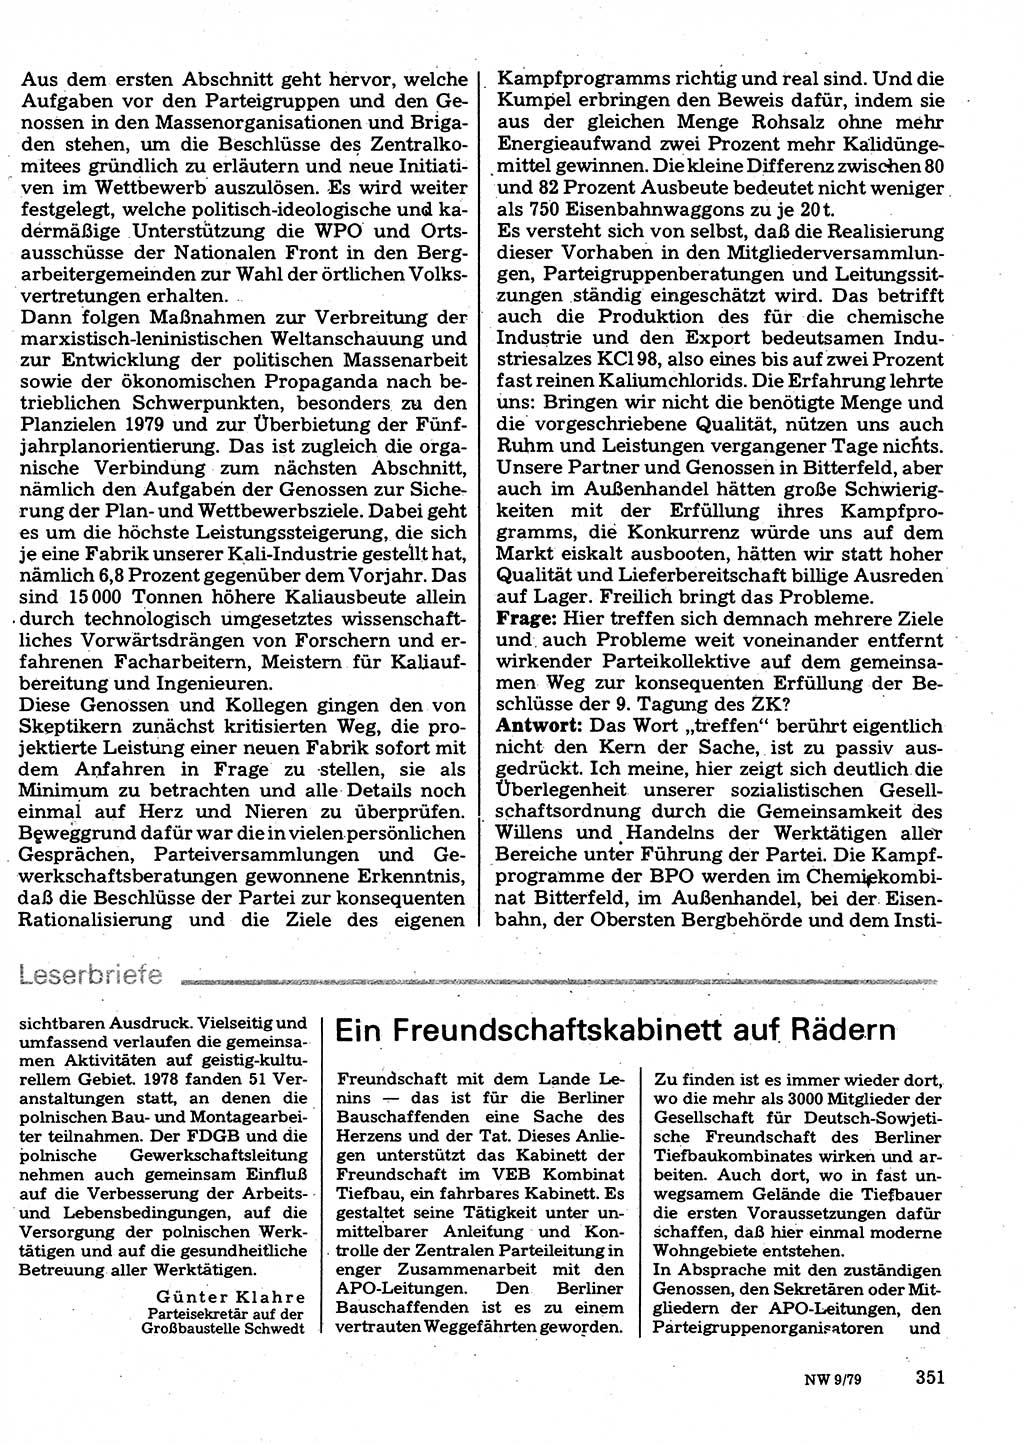 Neuer Weg (NW), Organ des Zentralkomitees (ZK) der SED (Sozialistische Einheitspartei Deutschlands) für Fragen des Parteilebens, 34. Jahrgang [Deutsche Demokratische Republik (DDR)] 1979, Seite 351 (NW ZK SED DDR 1979, S. 351)